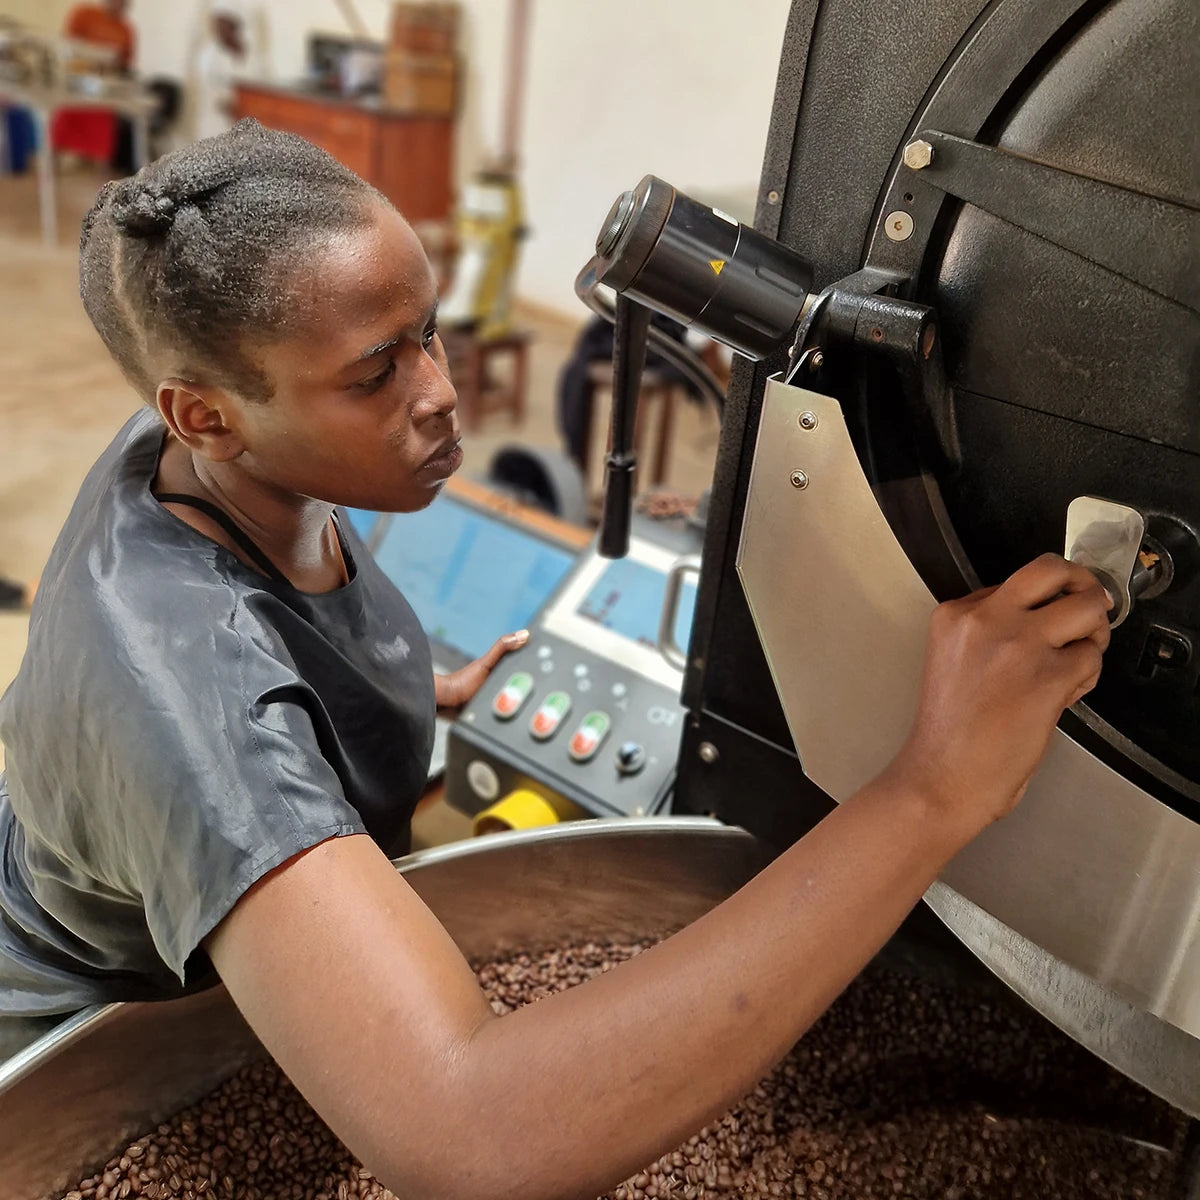 wirtschaftswachstum afrika kaffeeindustrie mit coffee annan frauen